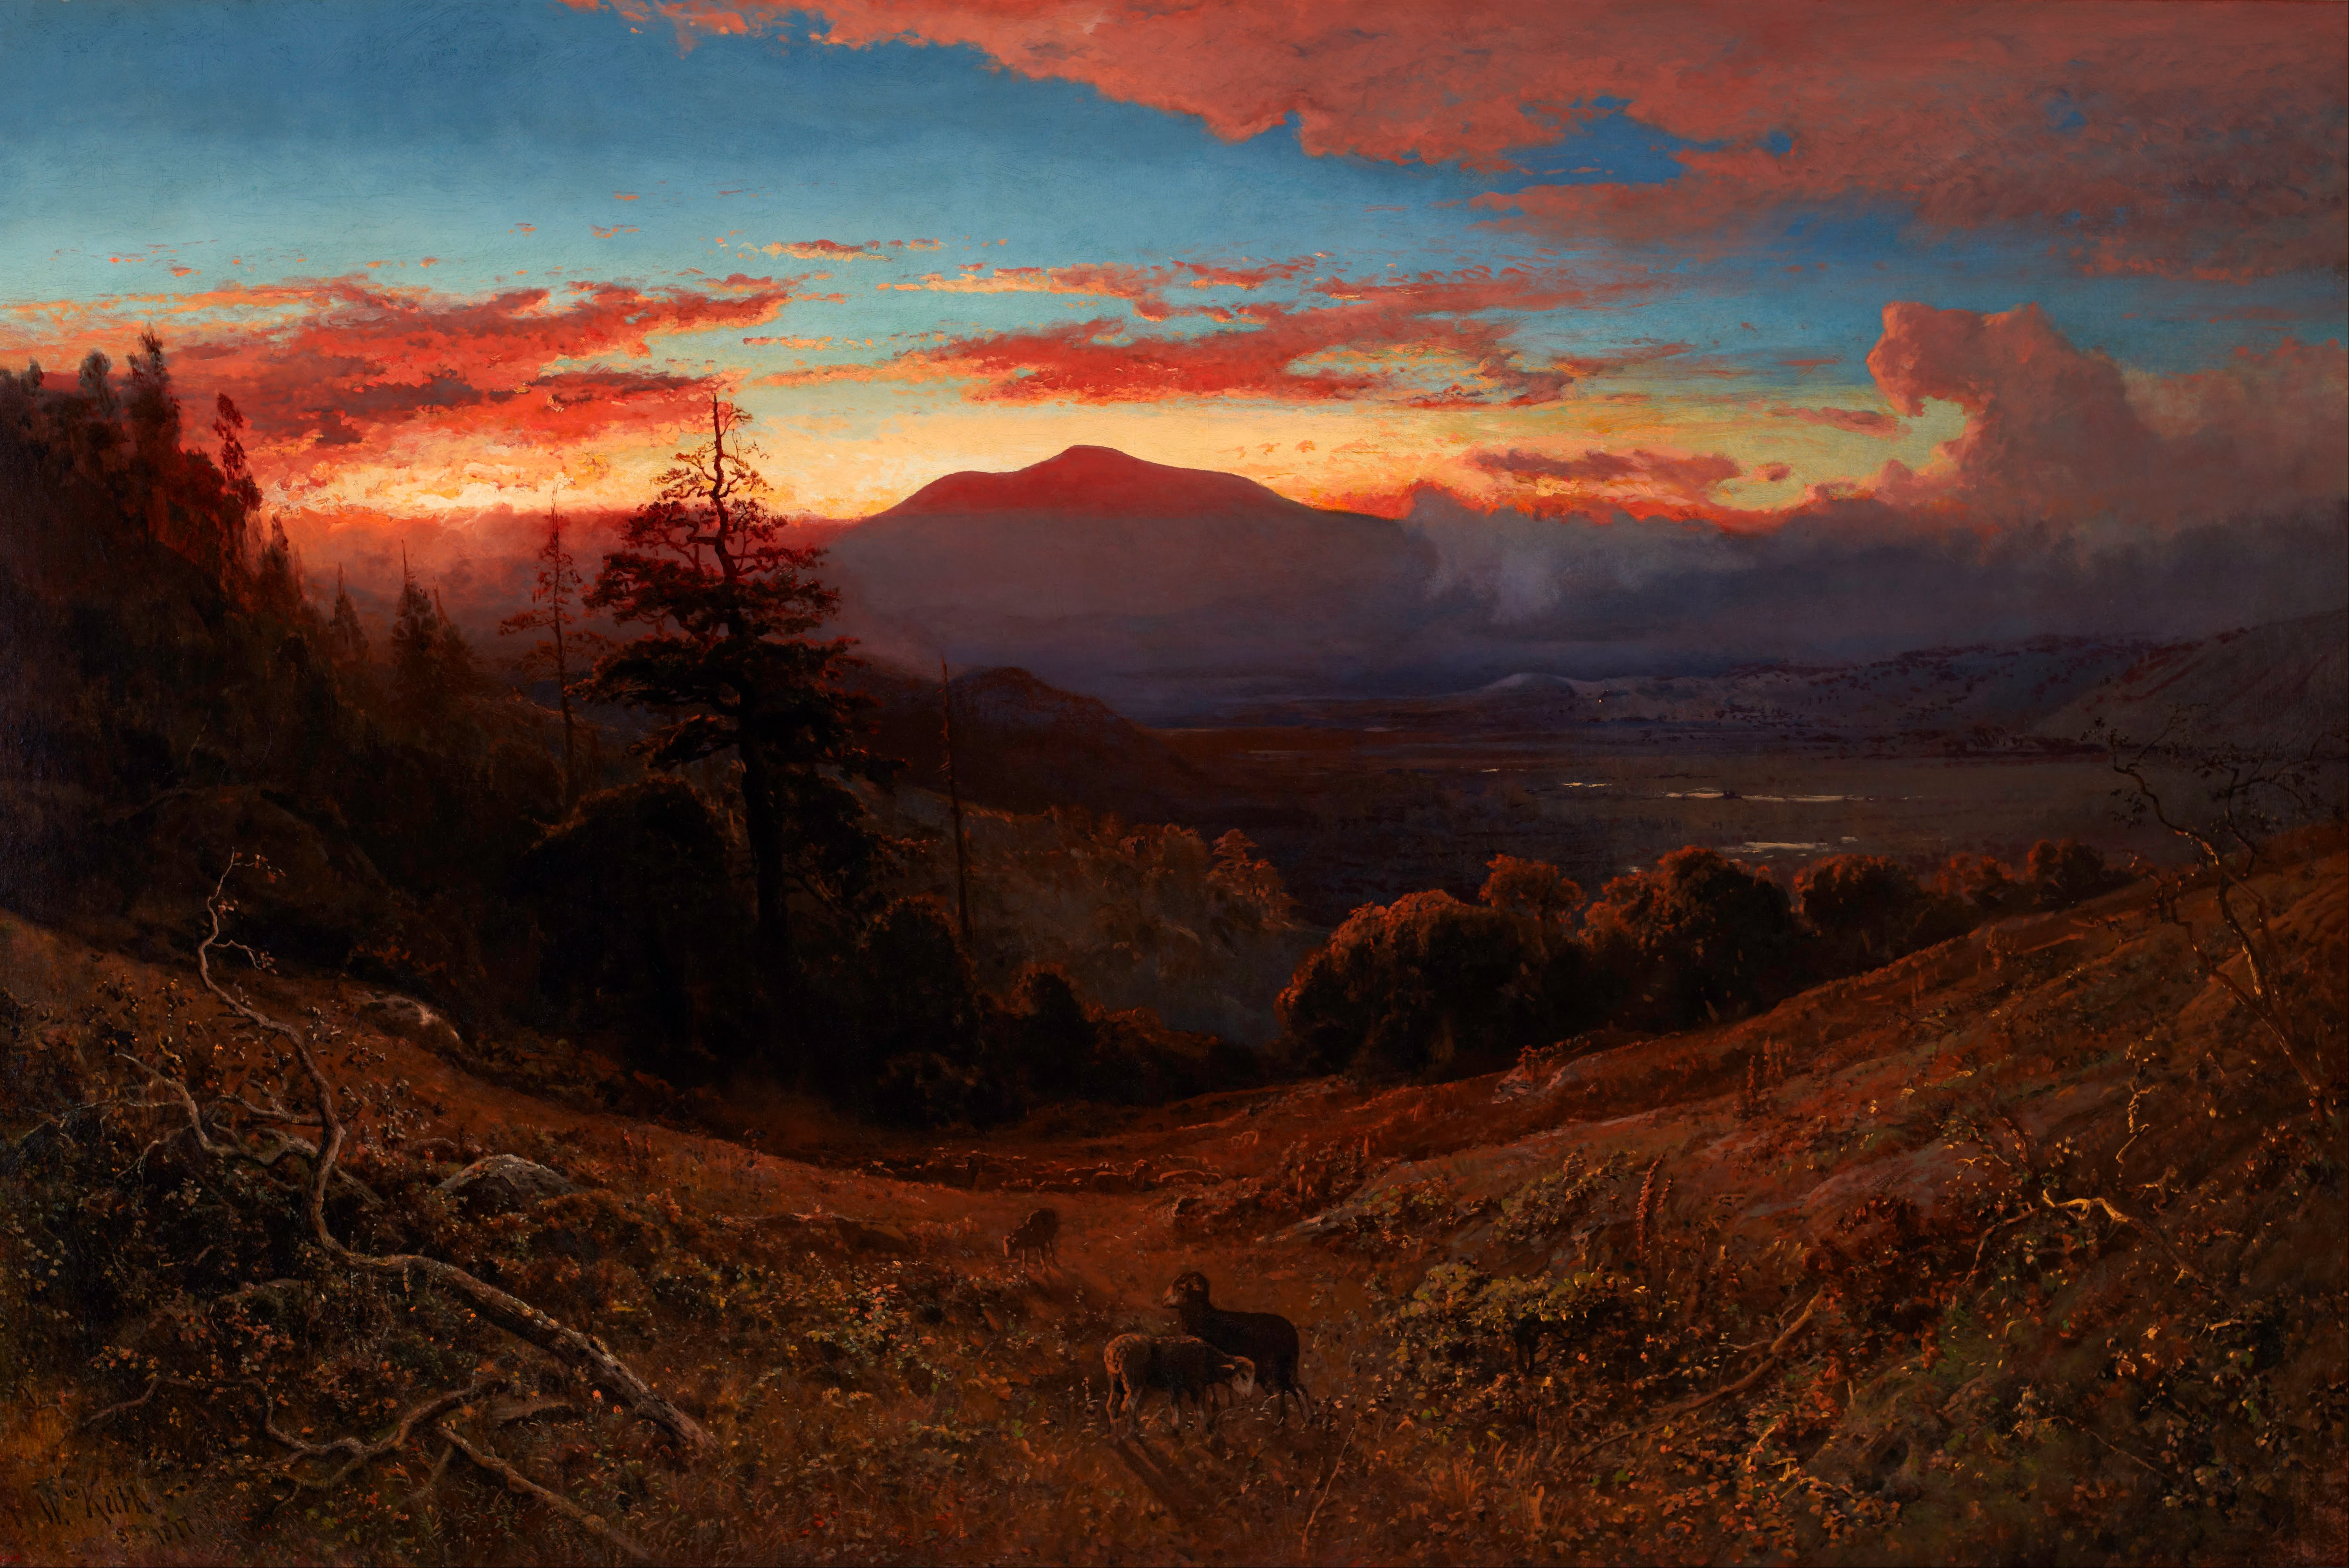 Coucher de soleil sur le mont Diablo by William Keith - 1877 Cantor Arts Center de l'Université Stanford